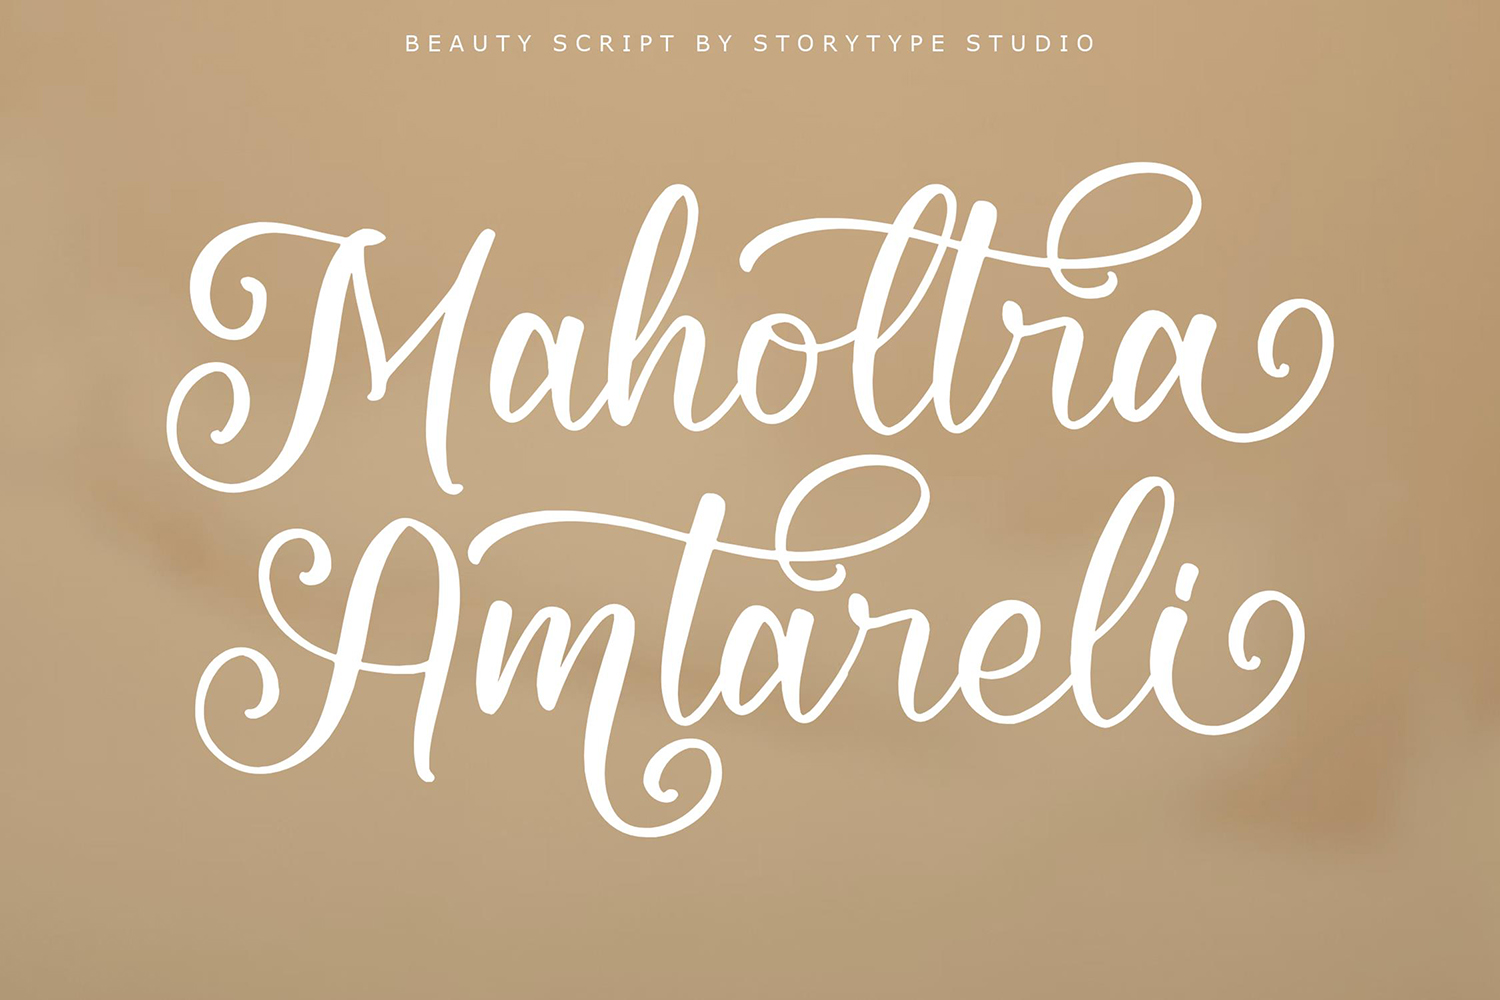 Maholtra Amtareli Free Font